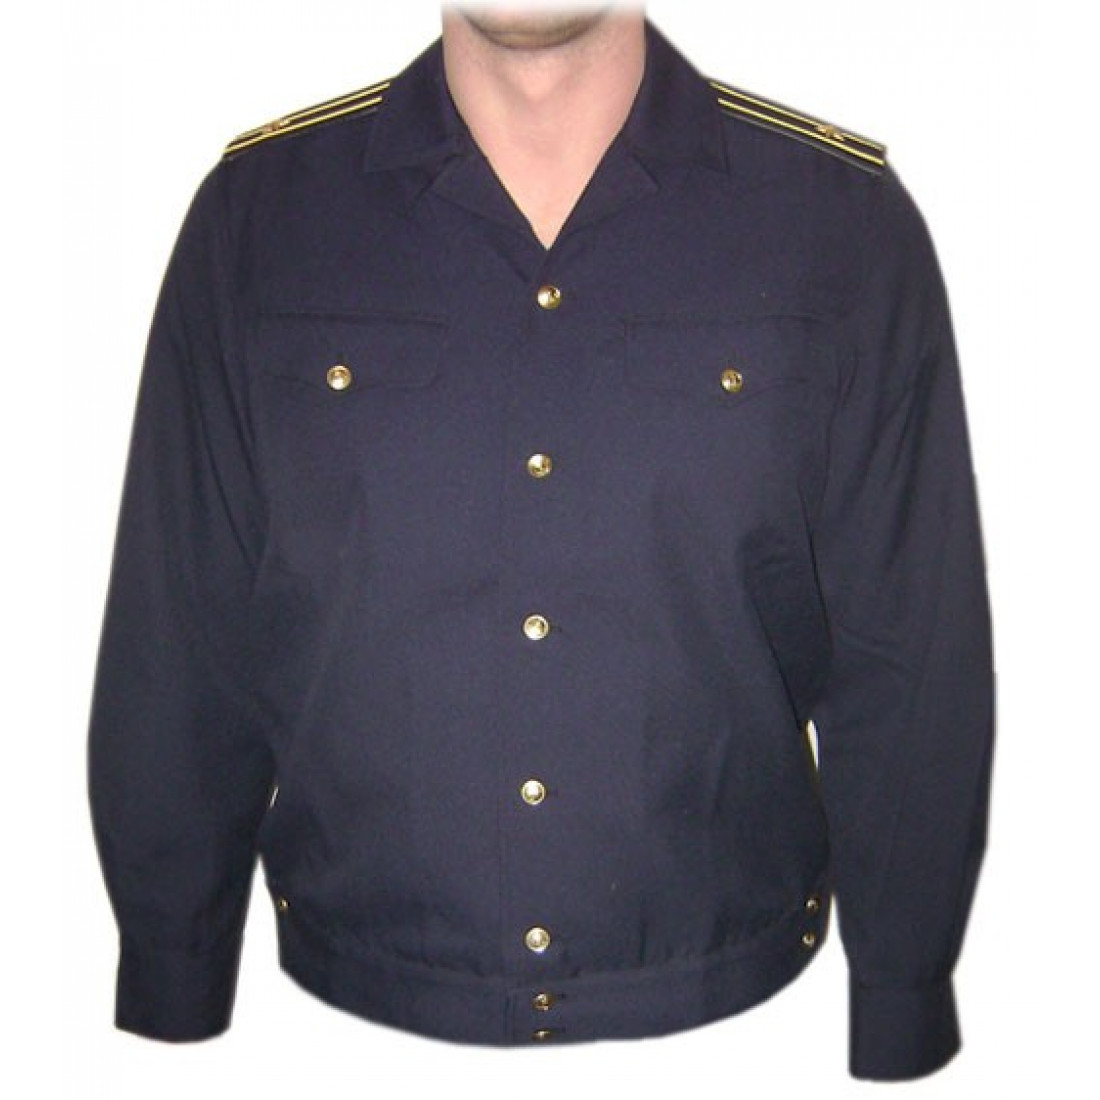 Двубортная домашняя или форменная куртка 7 букв. Форменная одежда речного флота. Форменная одежда речника. Китель. Форменный китель.